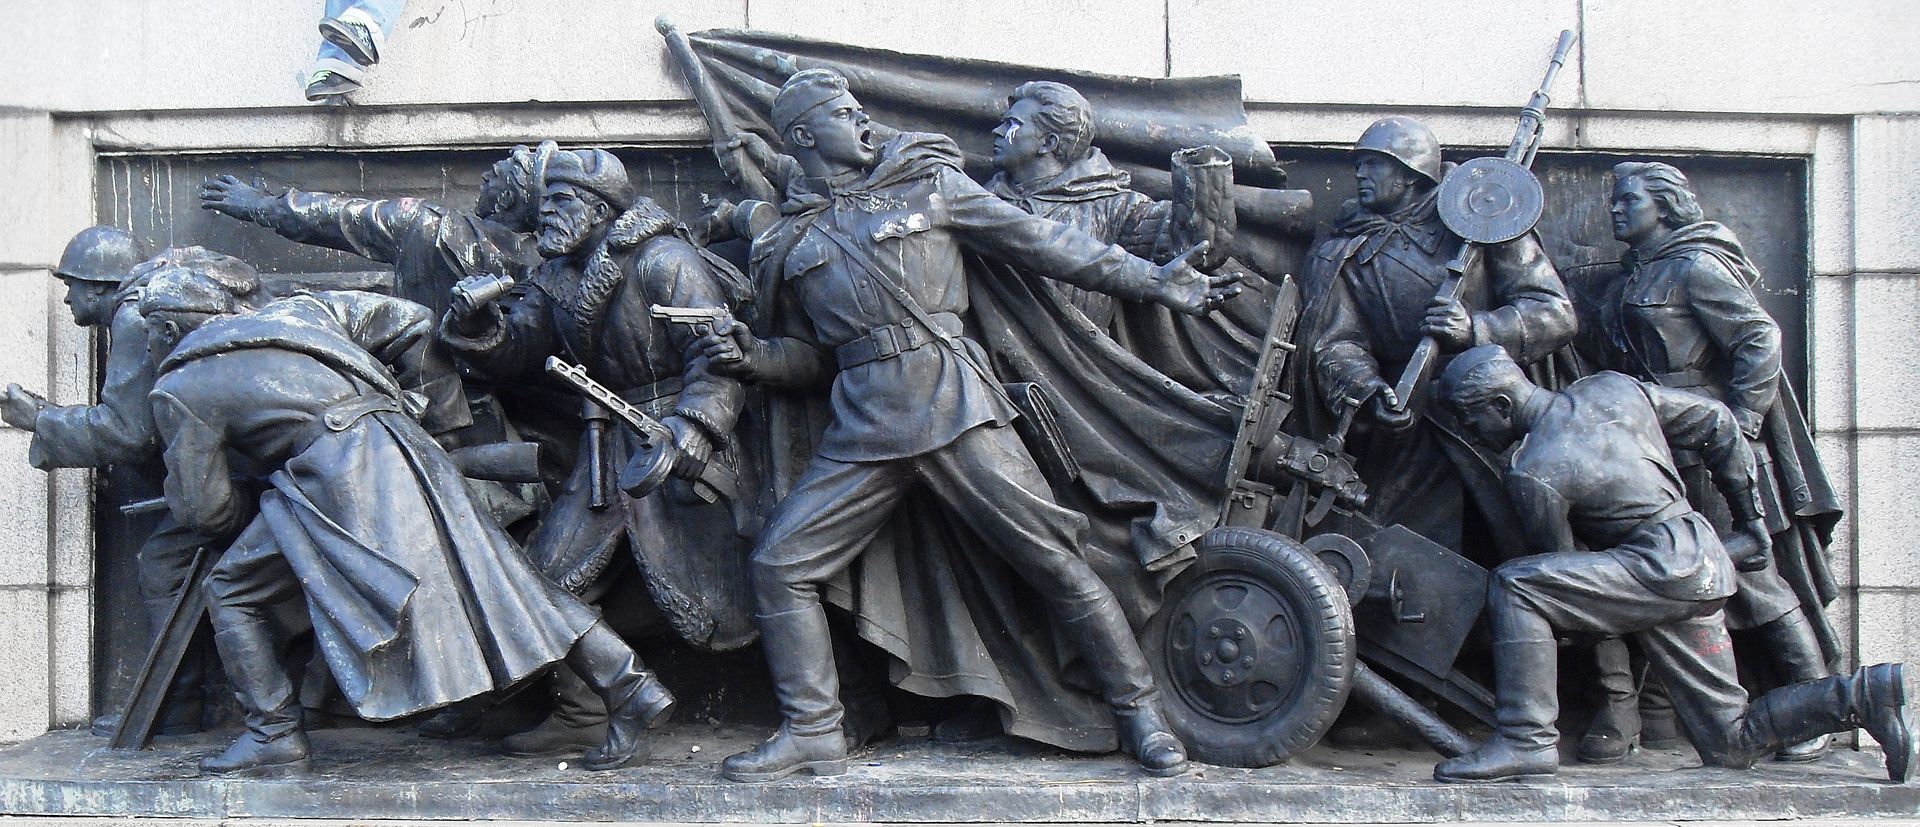 Паметникът на Червената армия - скулптурна композиция върху западната страна на фундамента, представяща борбата на Червената армия през Втората световна война.